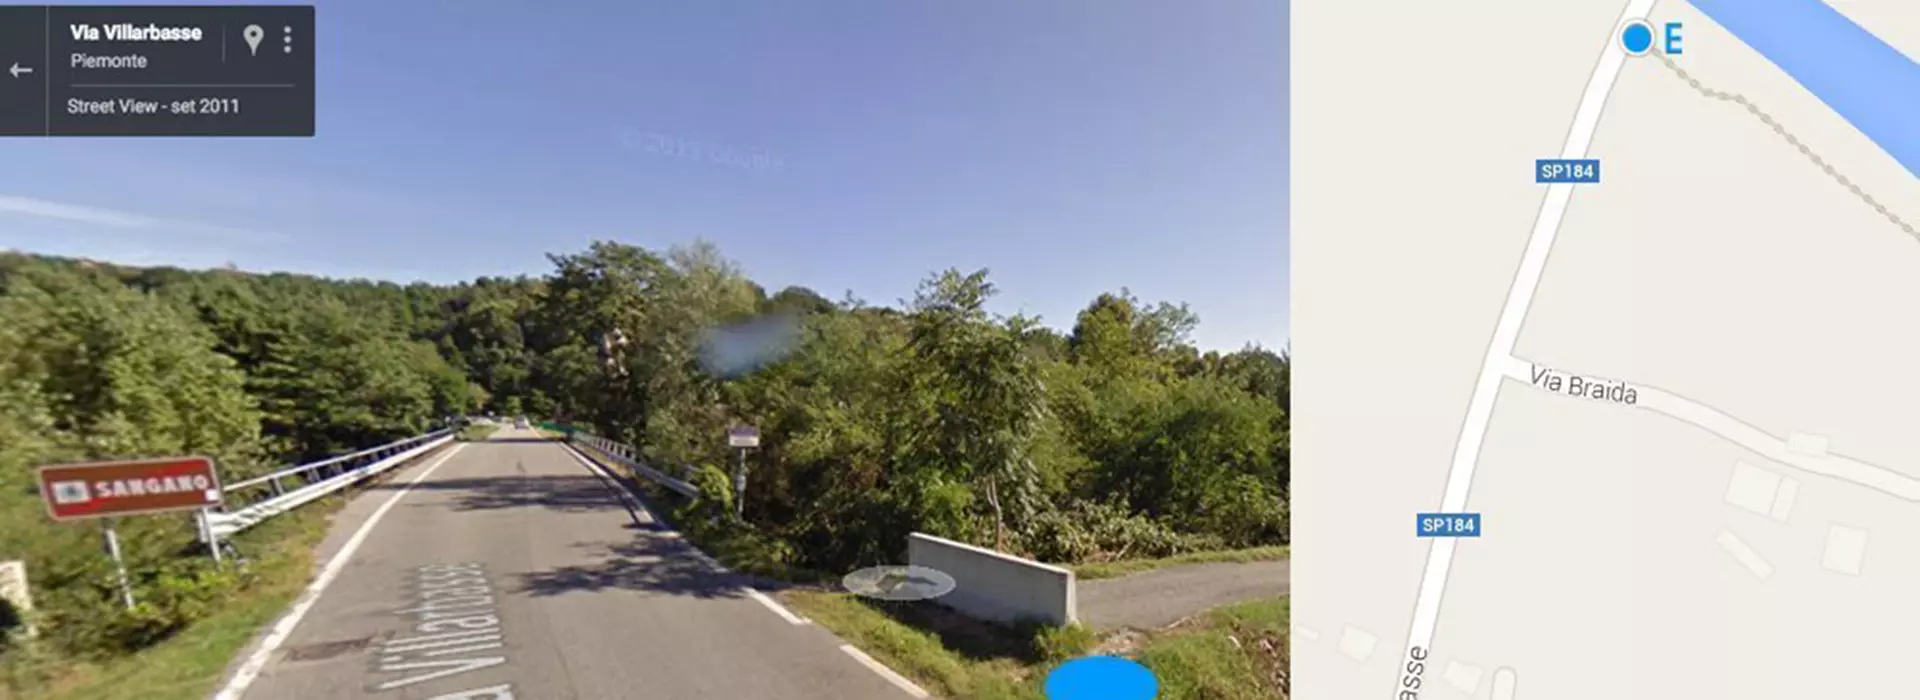 Screenshot di Google maps Sangano (Via Villarbasse) Inizio o Fine percorso con evidenziato il punto E della via fluviale del Sangone Fiume 